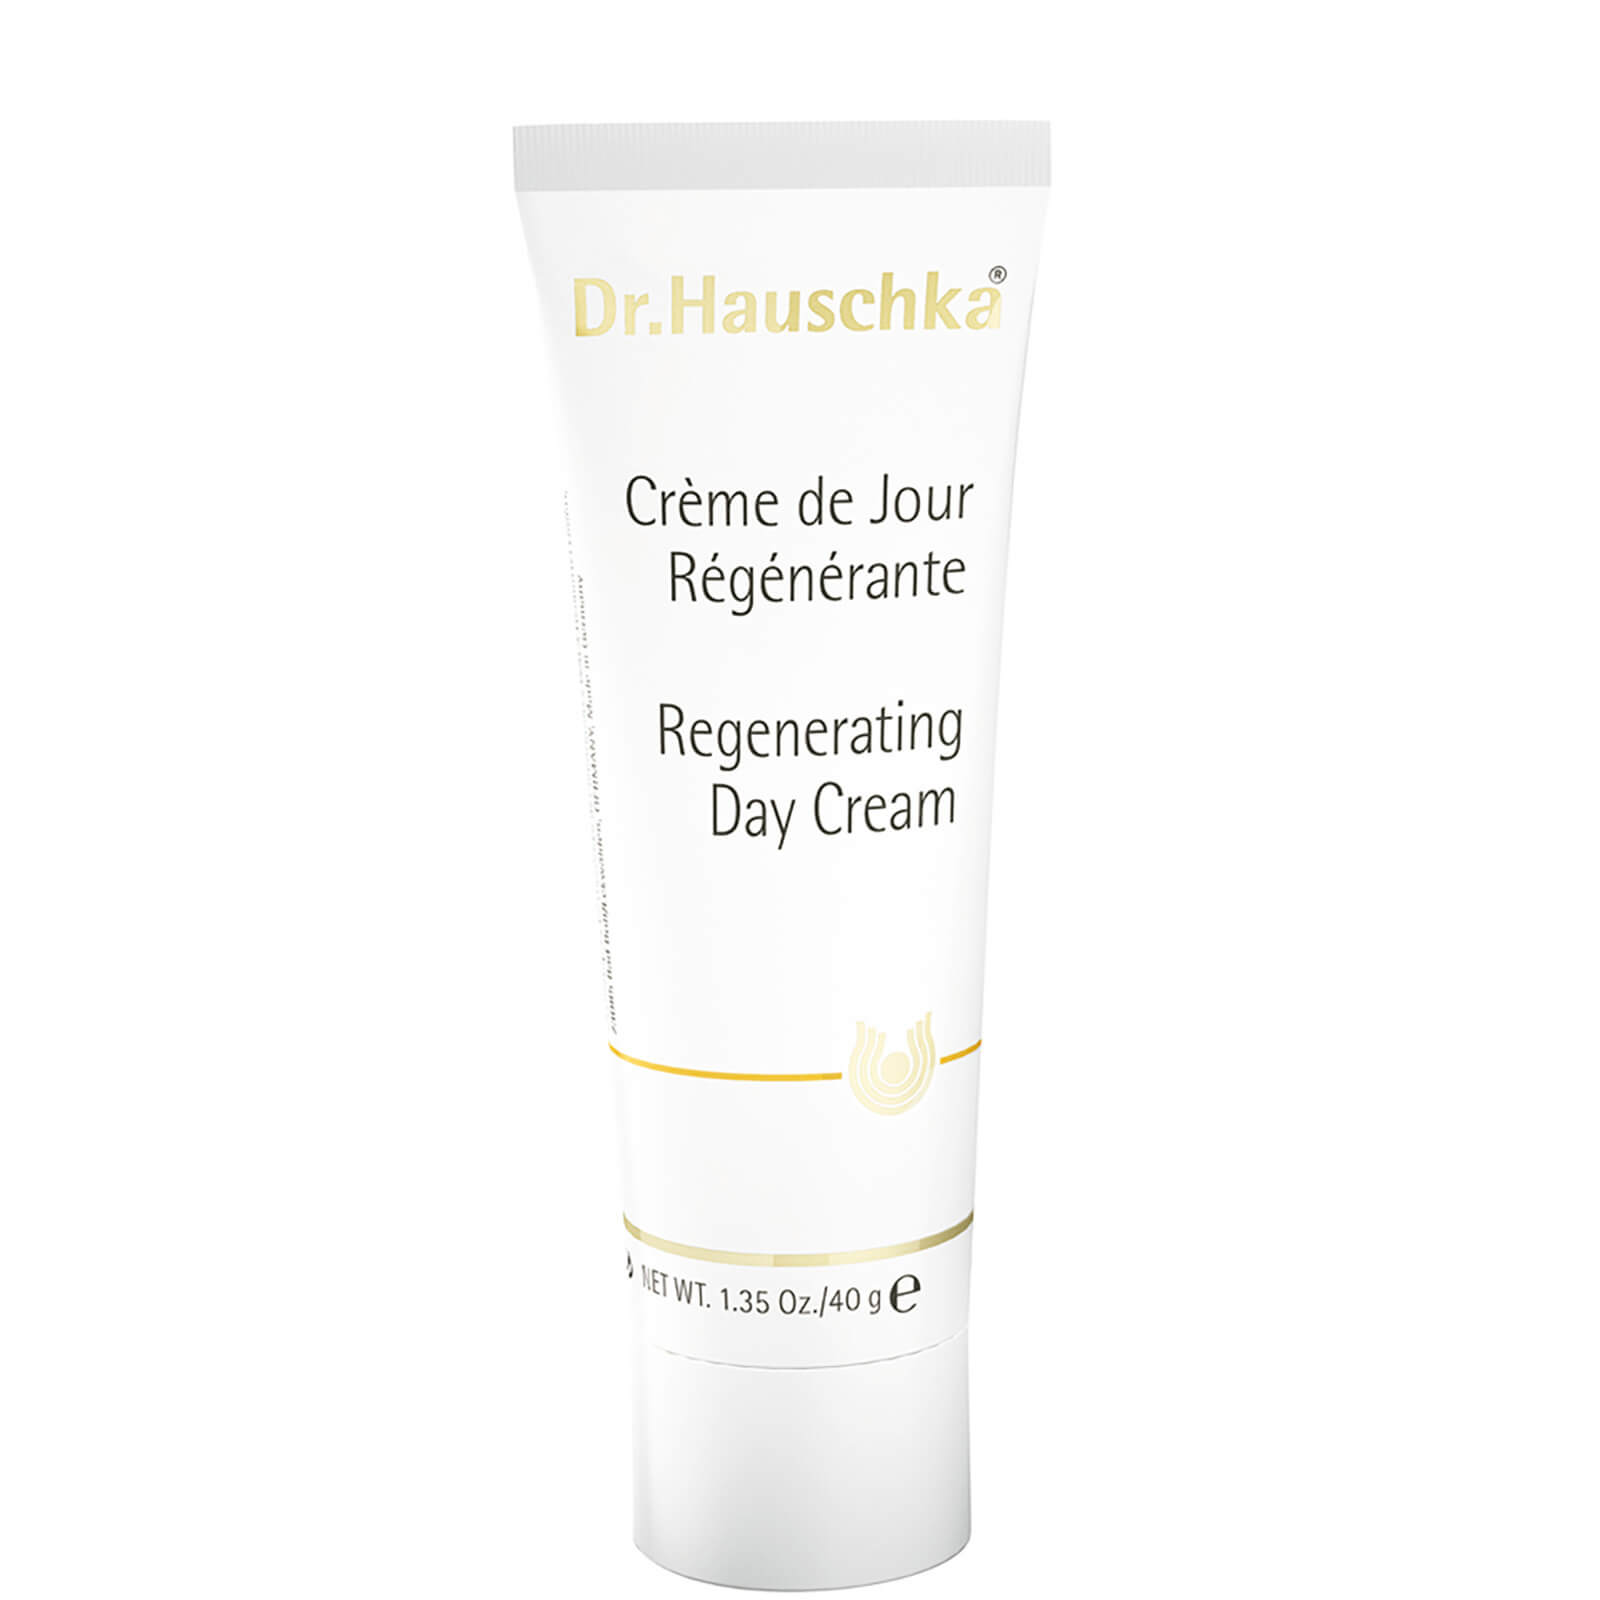 Crema de día regenerante Dr.Hauschka 40g